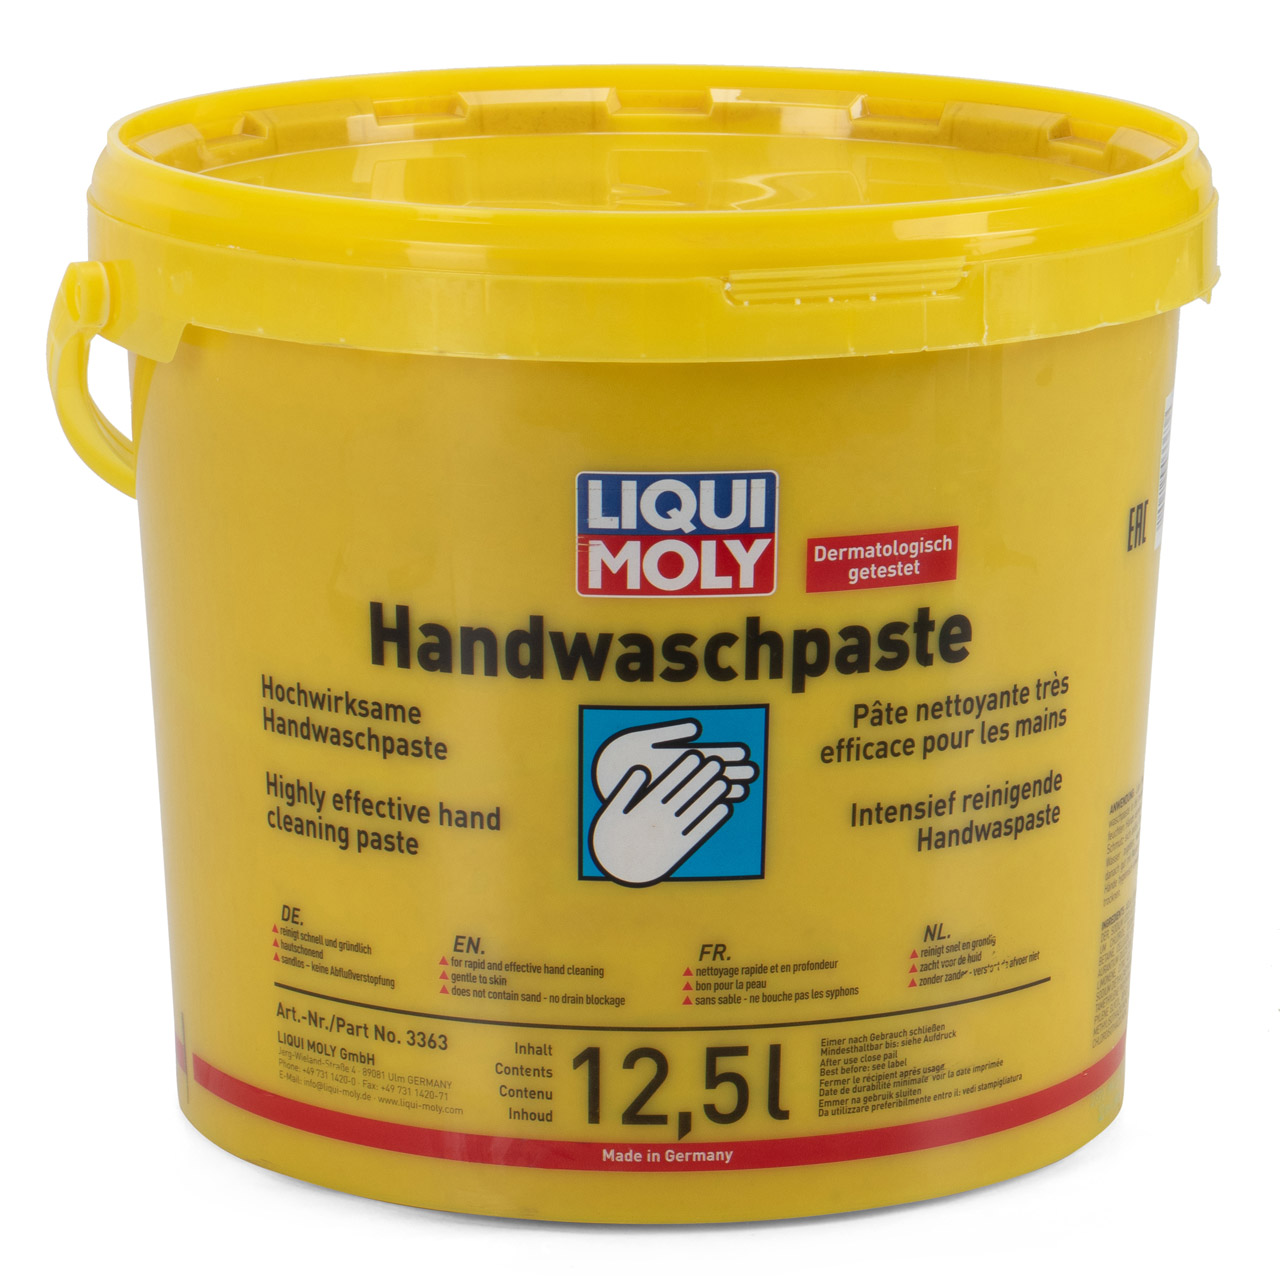 LIQUI MOLY 3363 Handwaschpaste Handwaschcreme Handseife Handreiniger 12,5 Liter